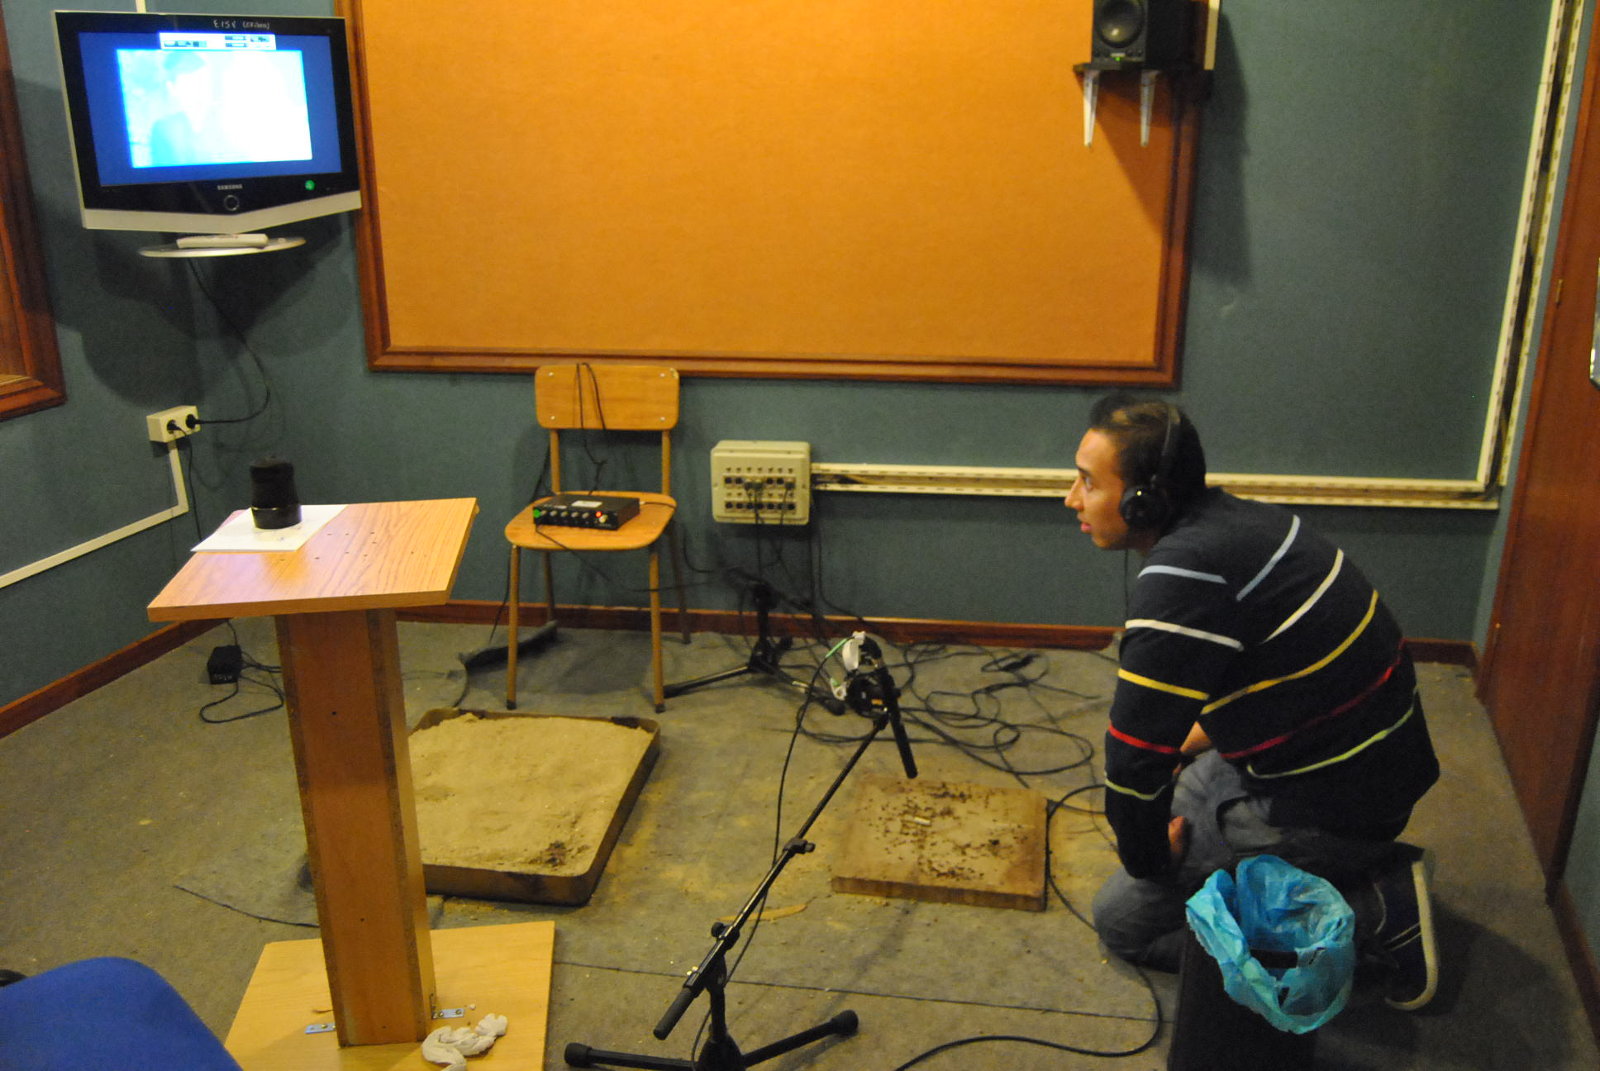 Escuela de Imagen y Sonido de Vigo EISV. Instalaciones de grabación de audio - Estudio de Foley - Práctica de Foley